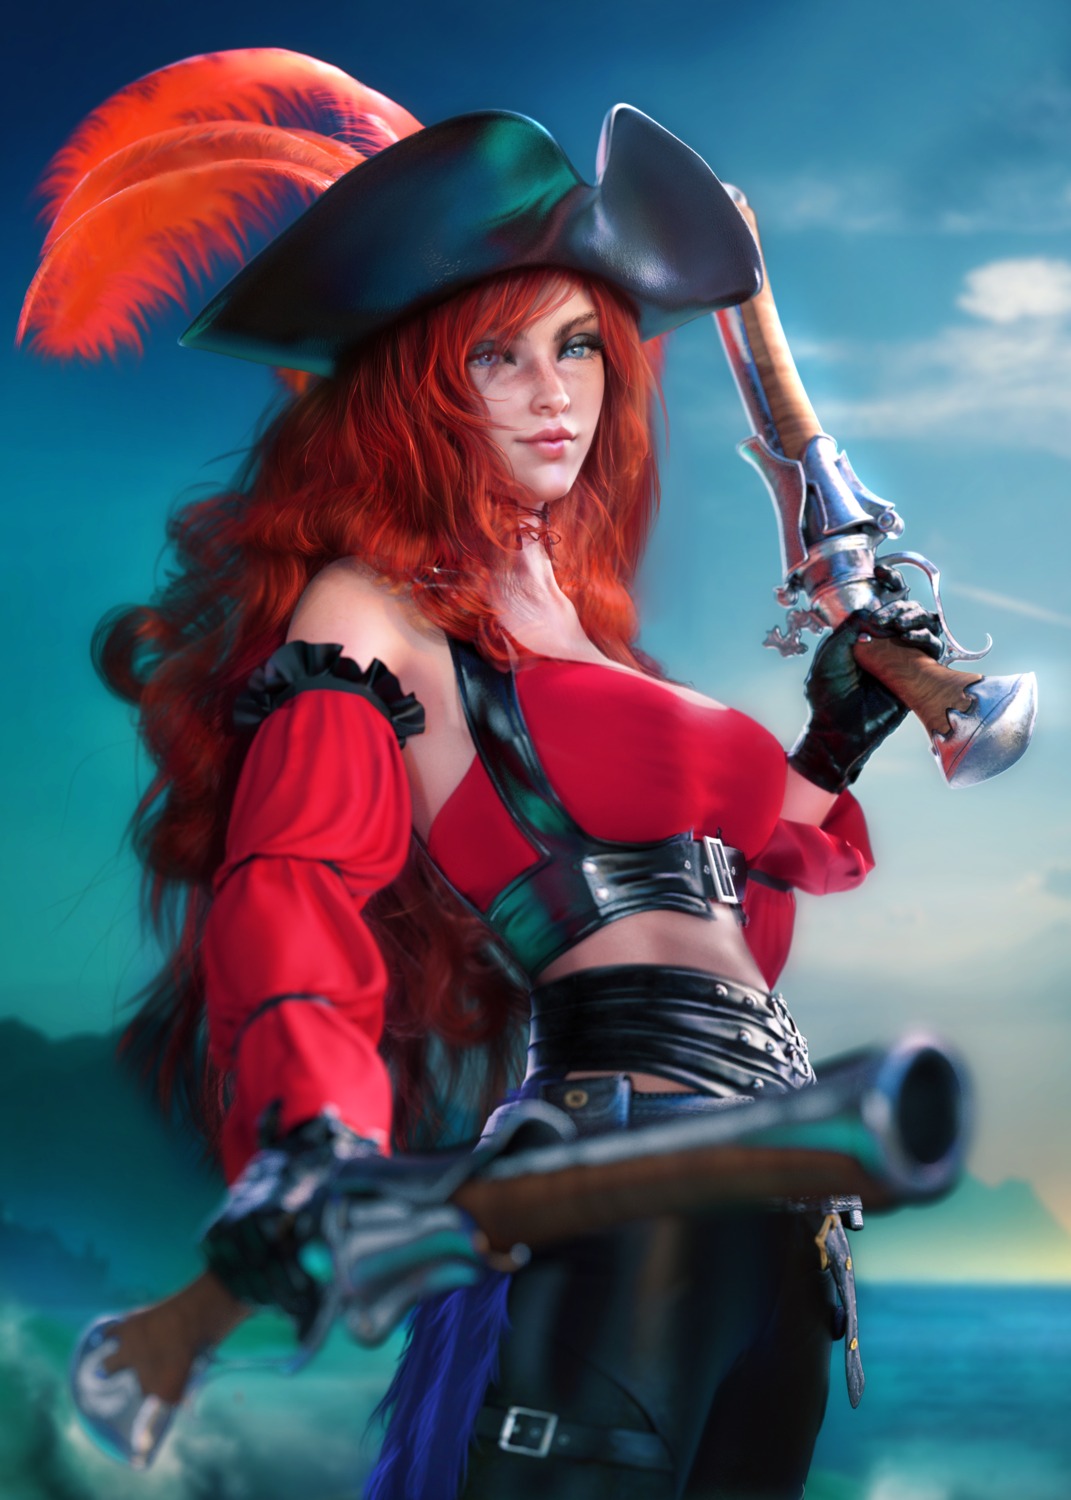 sevenbees league of legends miss fortune gun pirate | #729048 | yande.re